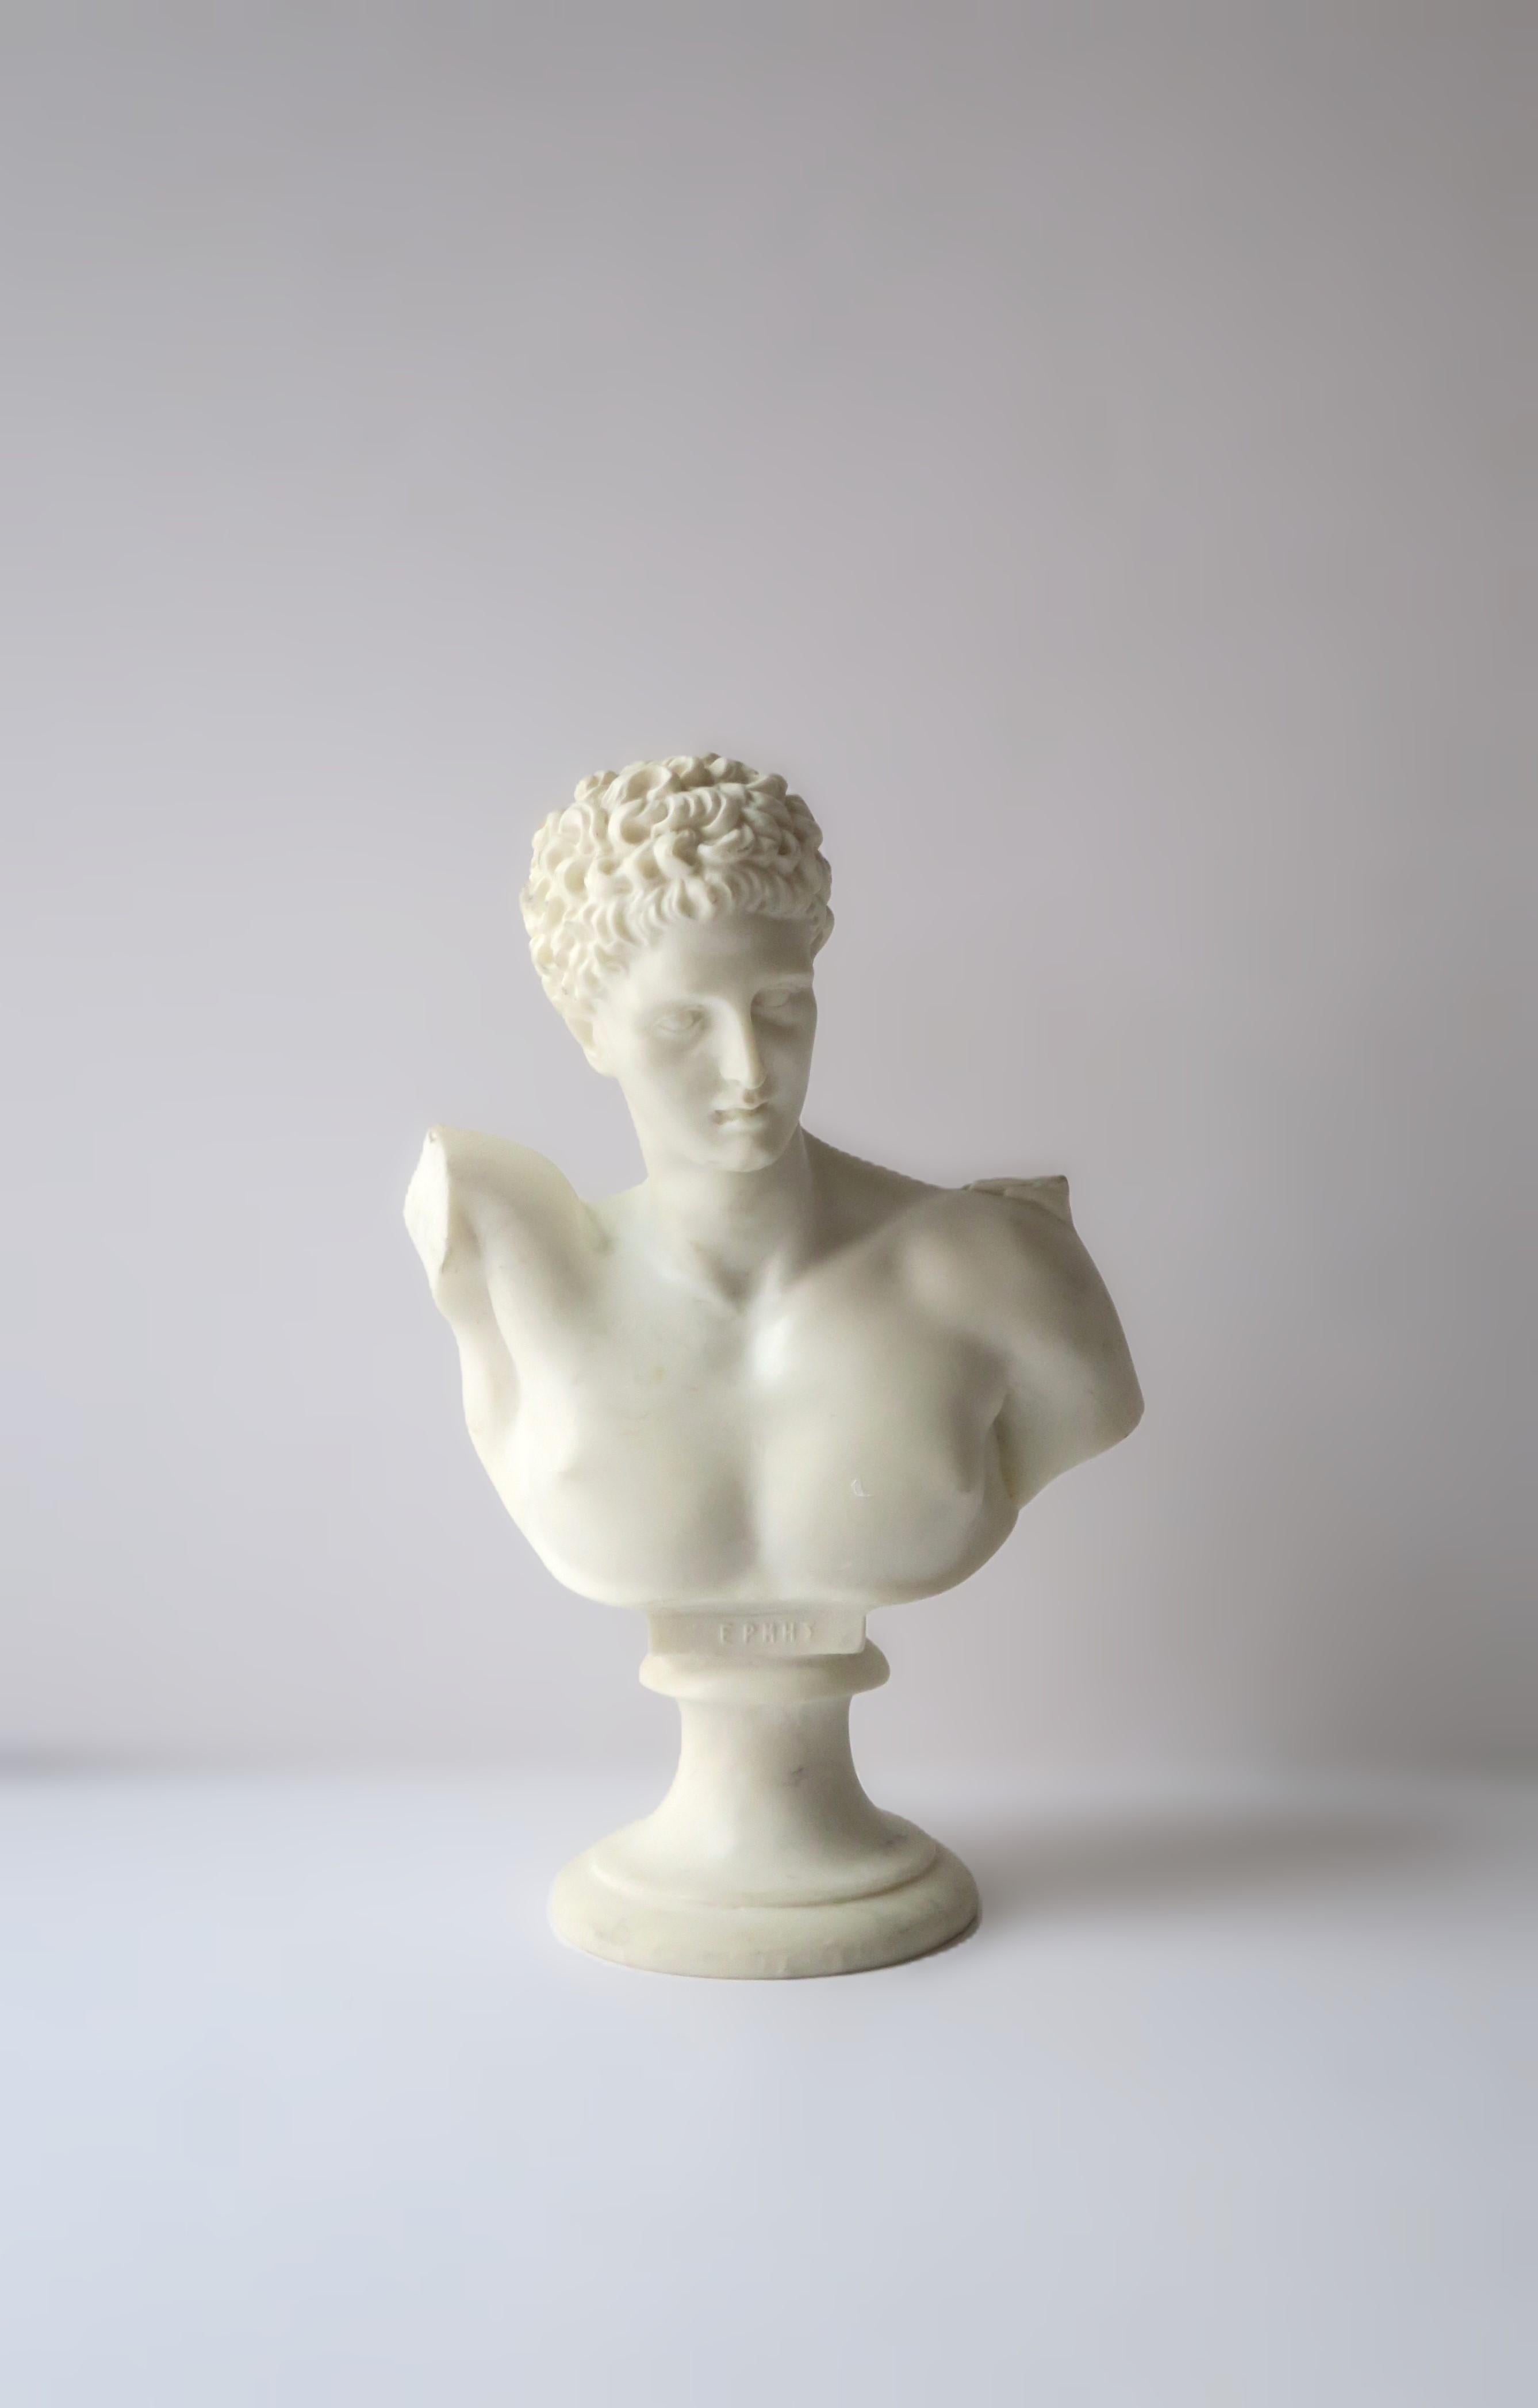 Buste en marbre blanc d'albâtre représentant le dieu de la Grèce antique, Hermès. Un superbe objet décoratif représentant la sculpture originale. La pièce peut faire l'affaire sur un pied de colonne, une étagère, une bibliothèque, un bureau, une